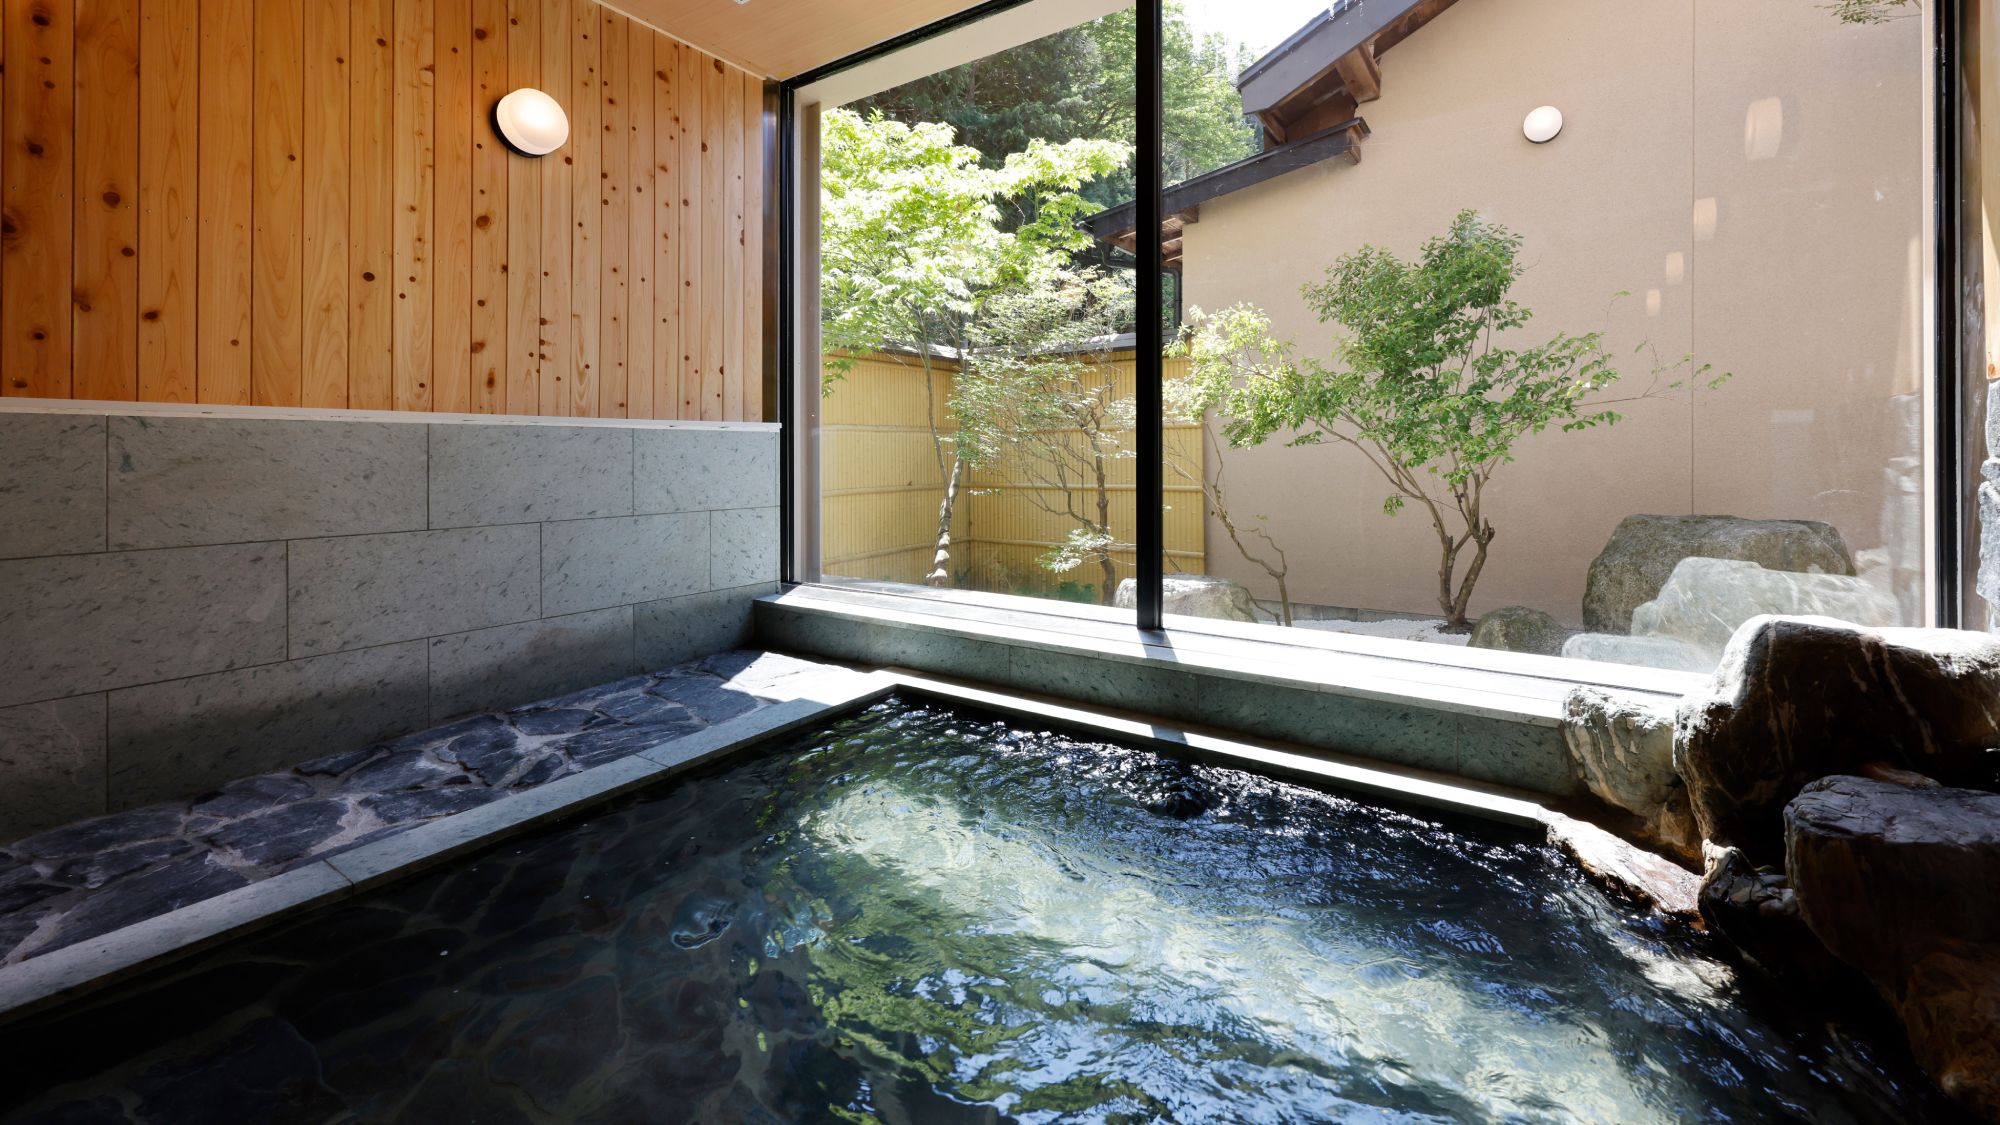 ・【温泉】浴場の壁には檜、床や浴槽は十和田石を使用。檜の香りに包まれながらご入浴ください